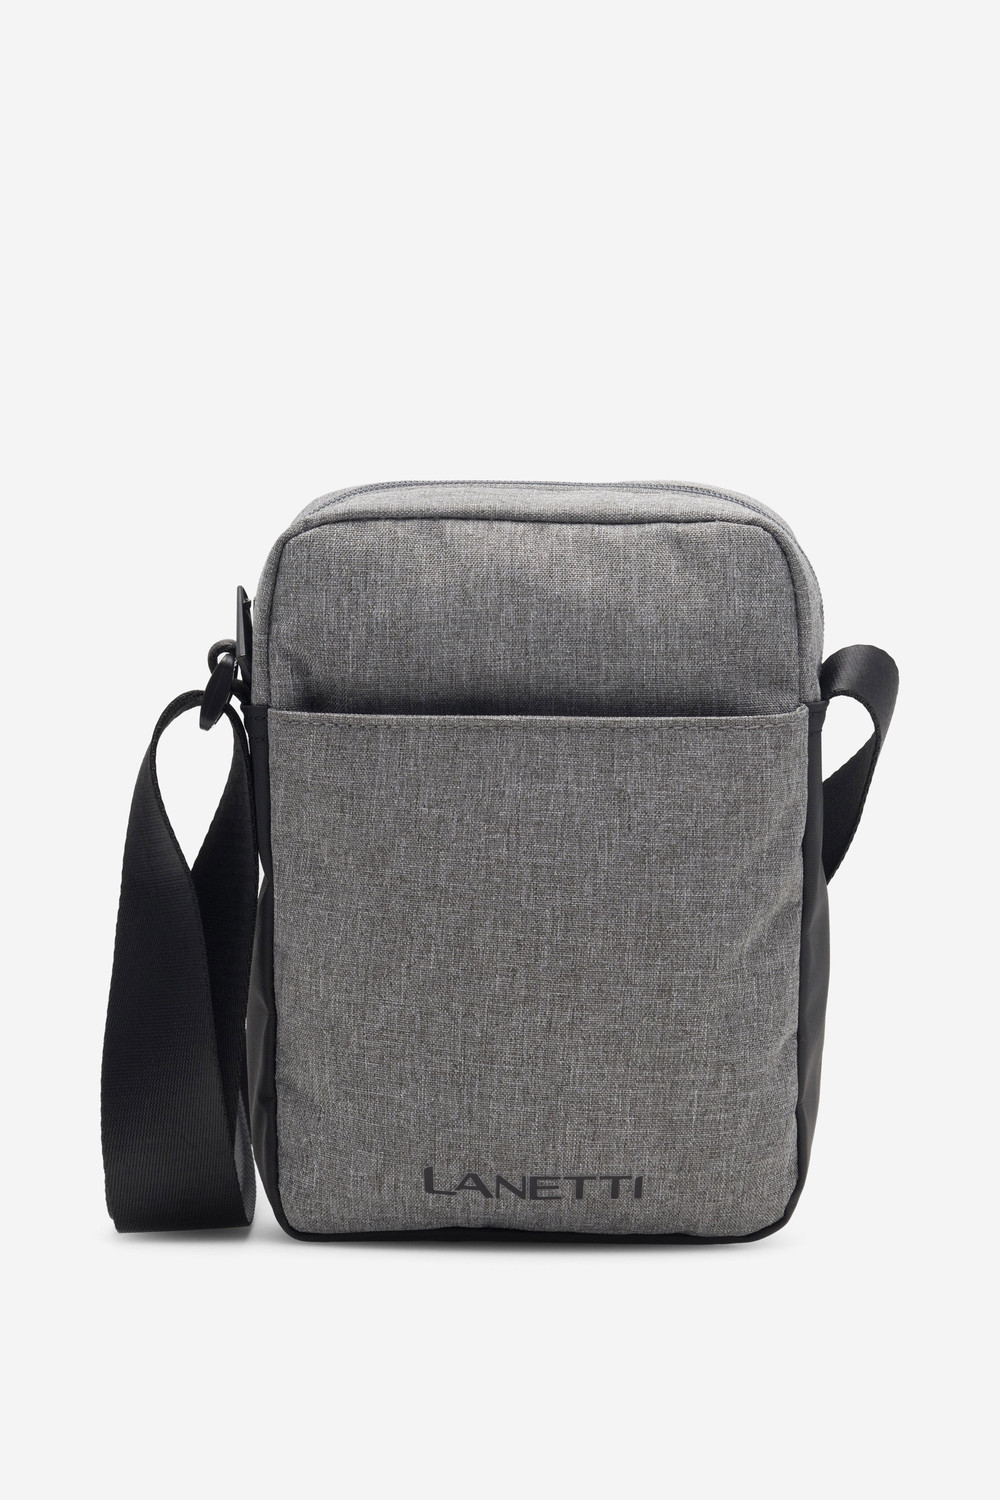 Pánské tašky Lanetti LAN-K-006-04R